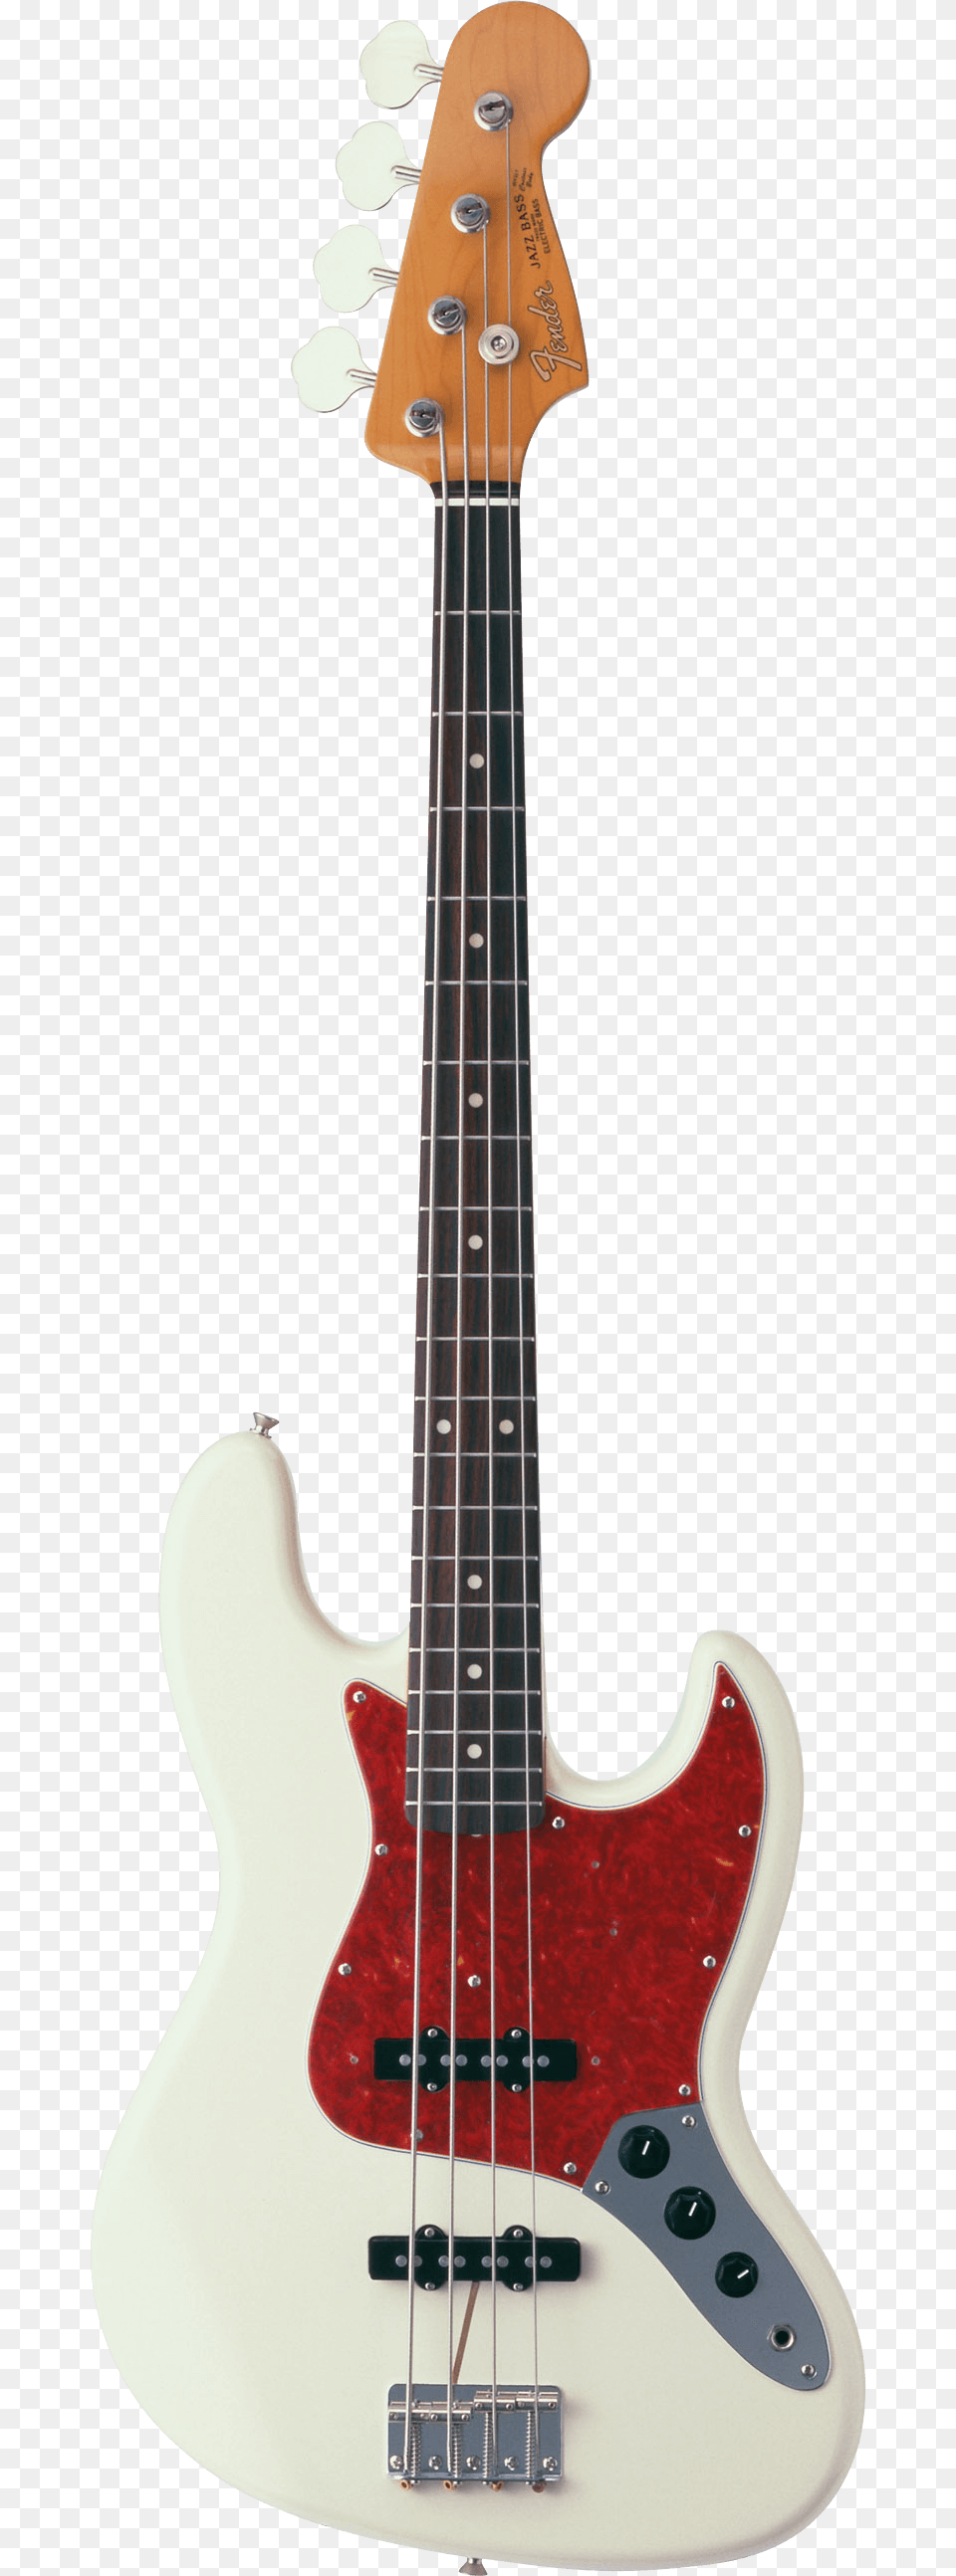 Fender Jazz Bass Guitar, Bass Guitar, Musical Instrument Png